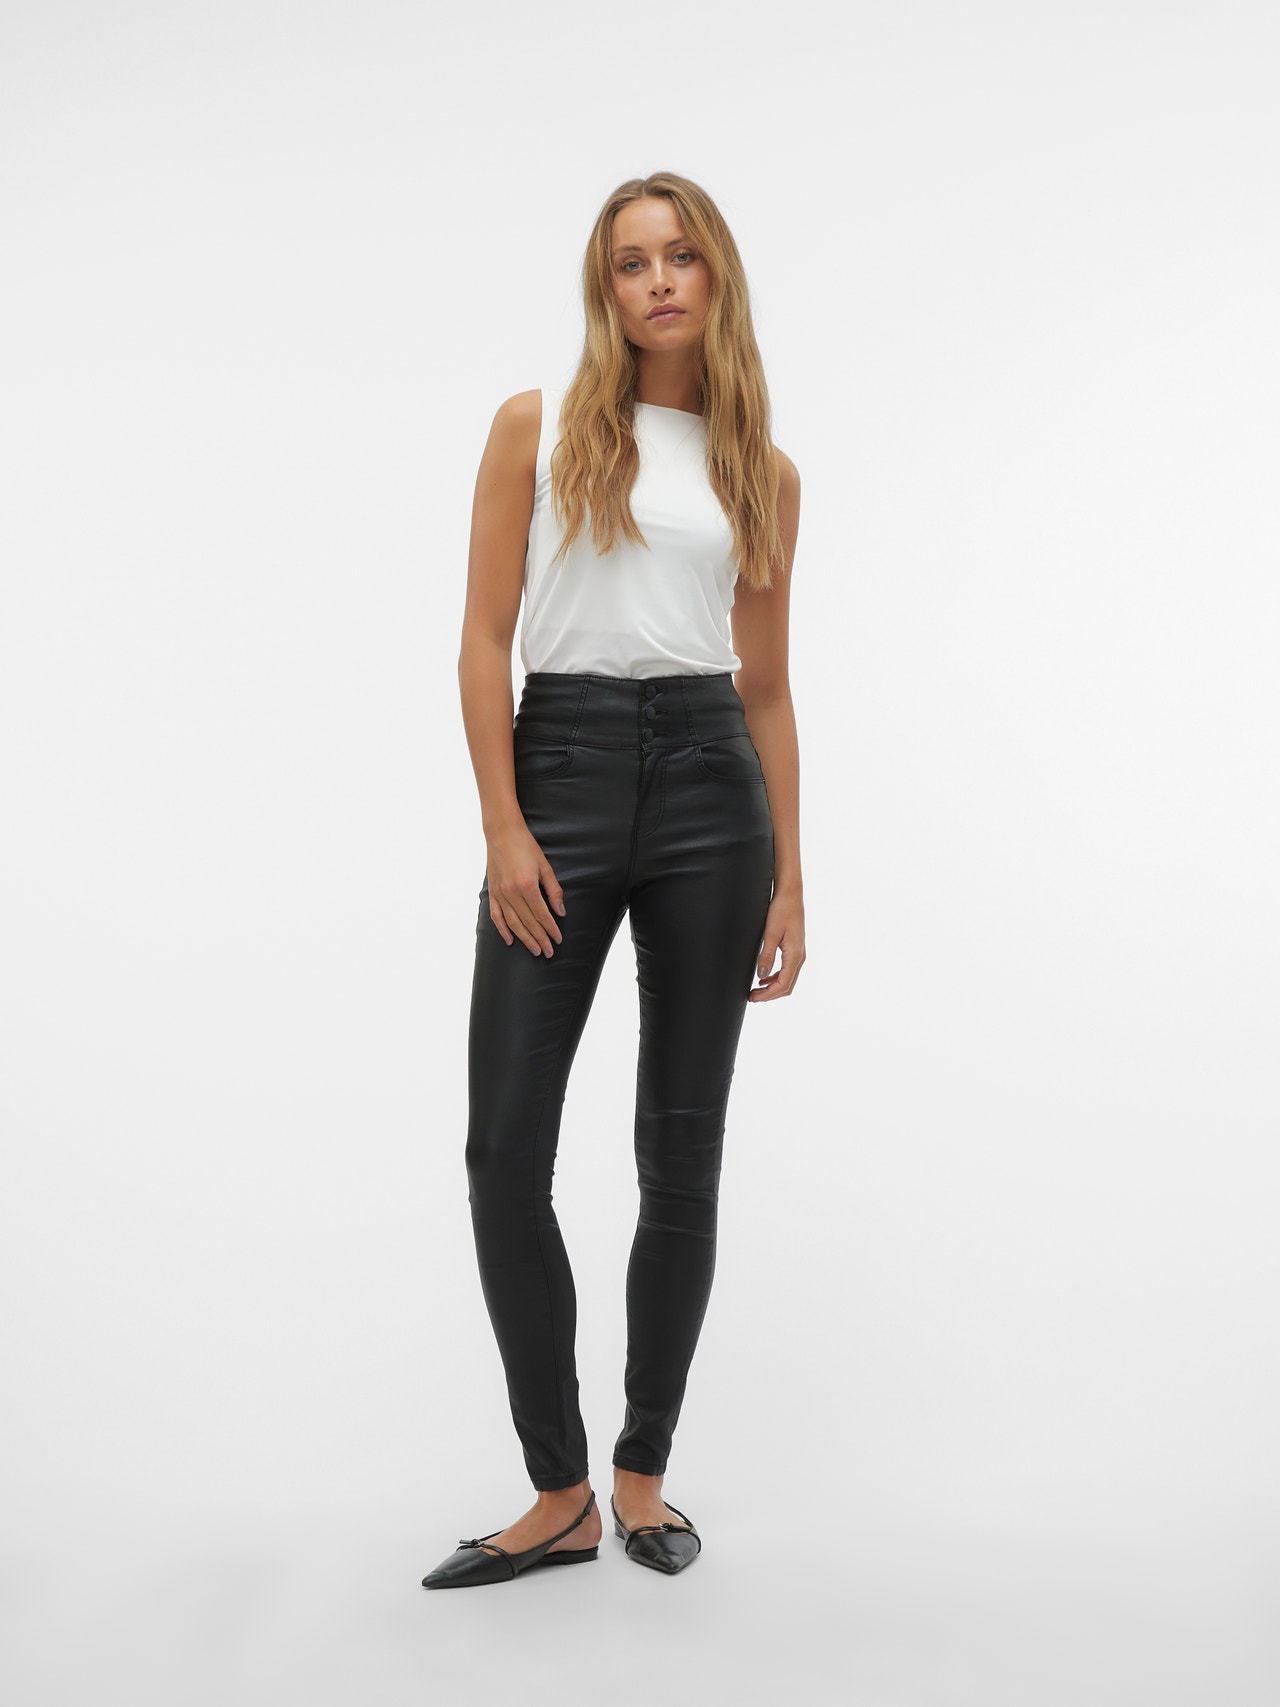 Vero Moda VMDONNA Skinny Fit Jeans -Black - 10304821